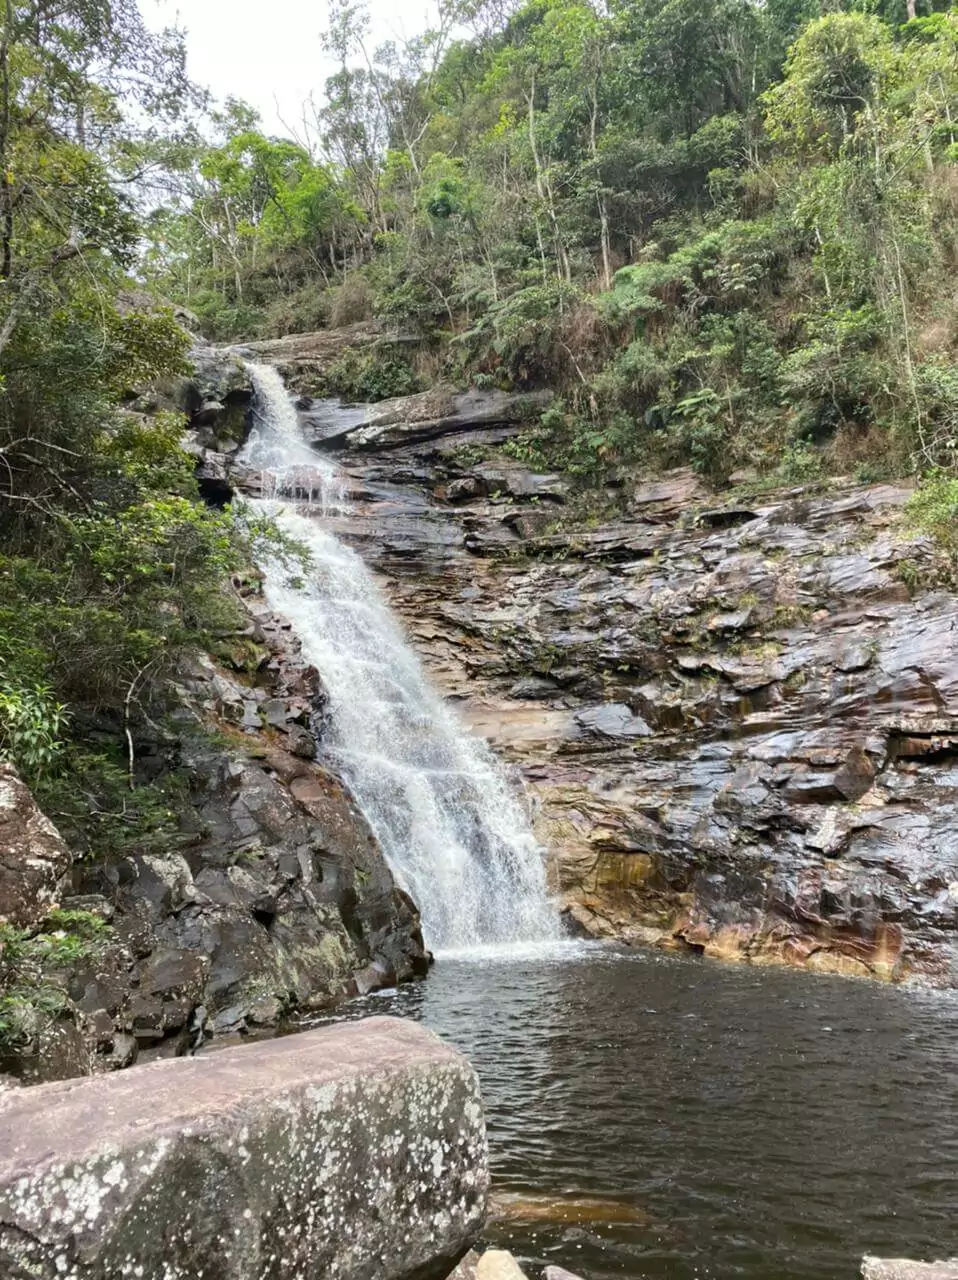 Cachoeira dos Funis, no Vale do Pati. À frente, o rio formado pela queda dágua. Atrás, a cachoeira cai do lado esquerdo para o direito, sobre rochas.